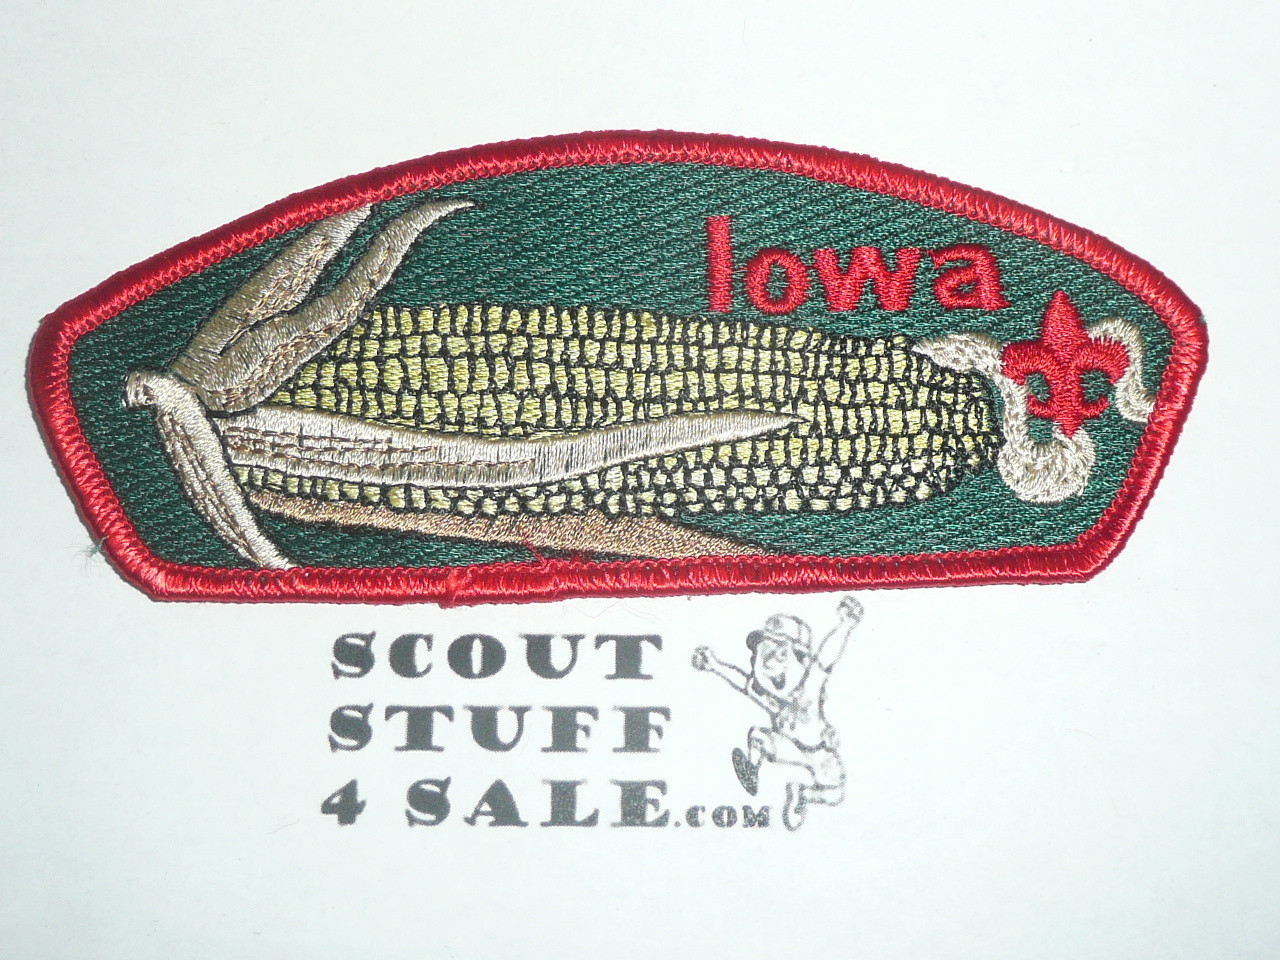 Mid-Iowa Council sa14 CSP - Scout